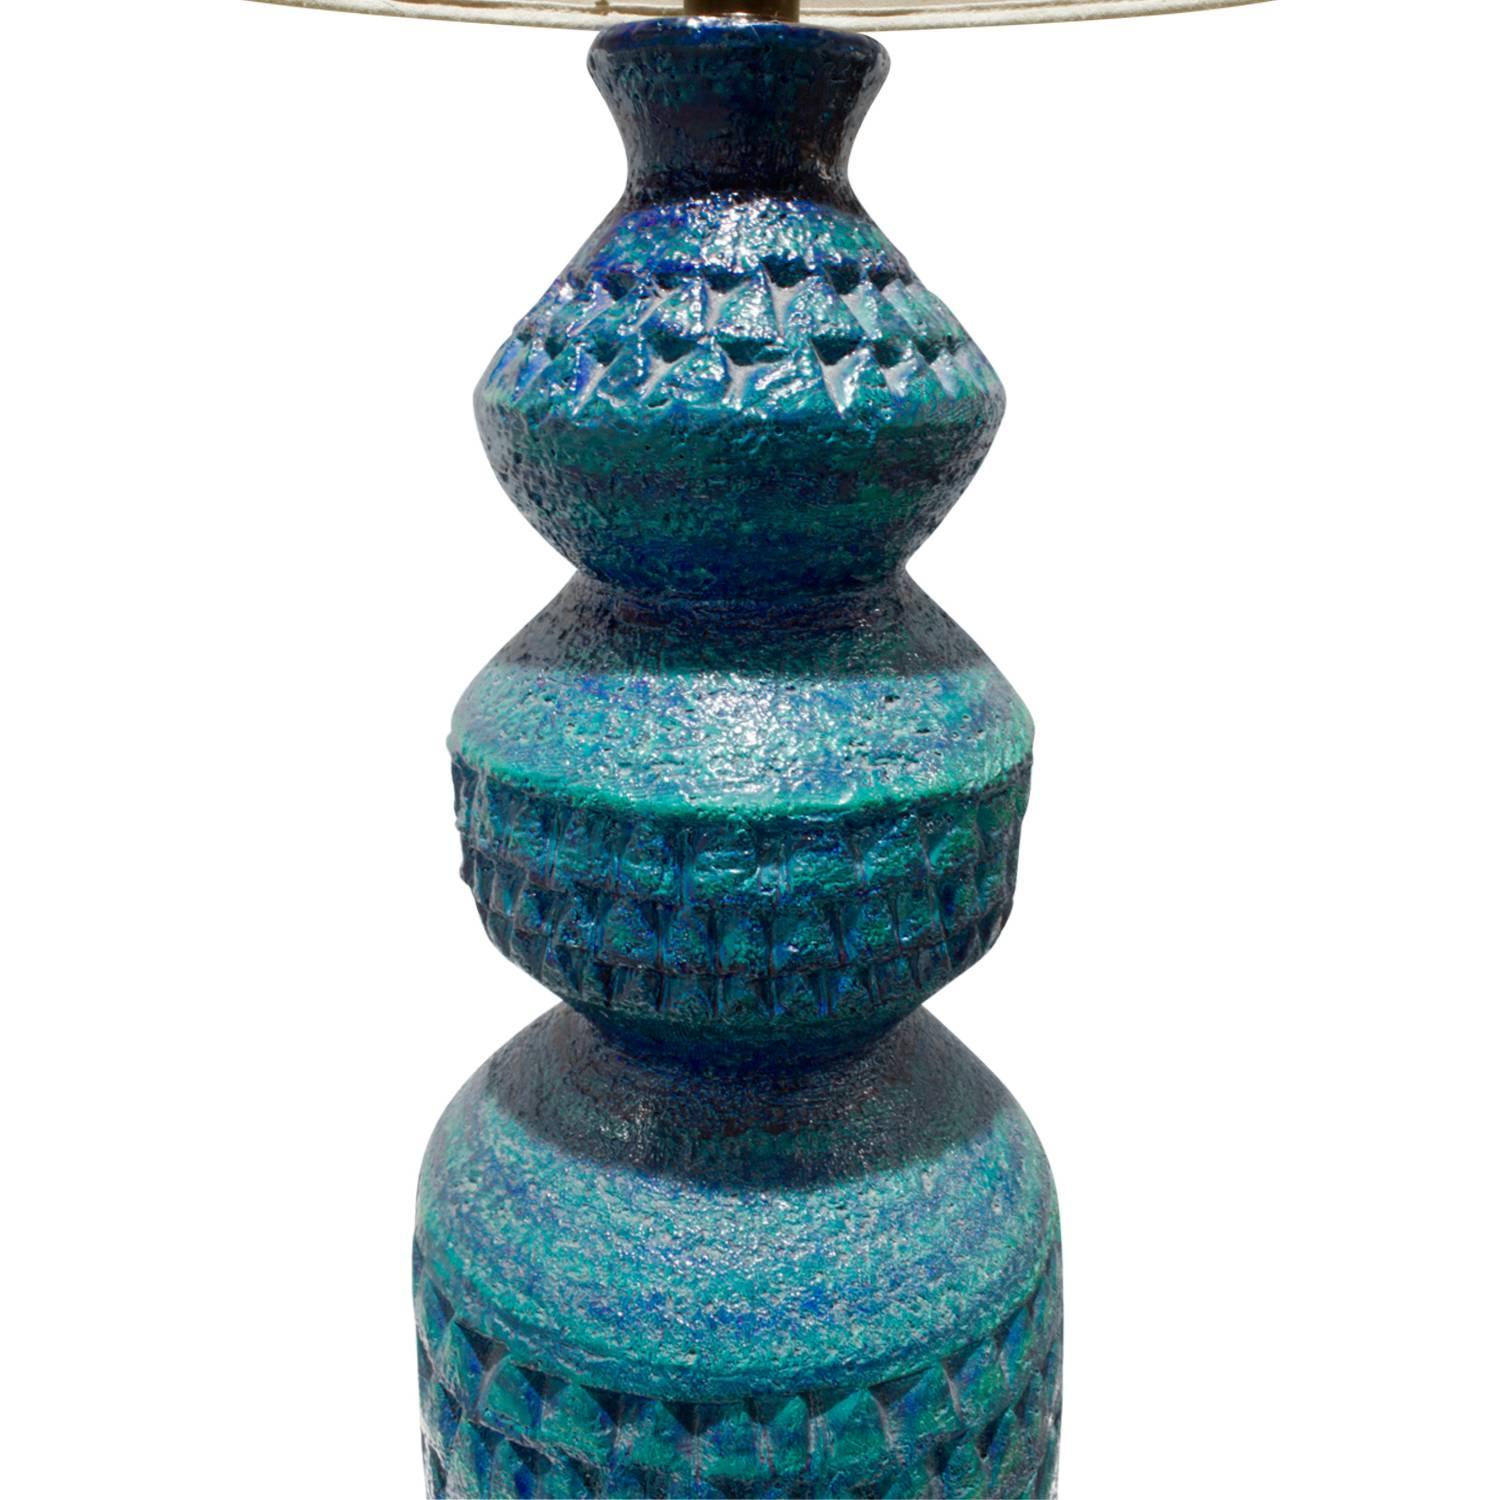 Große, stark strukturierte blaue Keramik-Tischlampe von Bitossi, Italien, 1950er Jahre.

Durchmesser des Schirms: 18 Zoll.